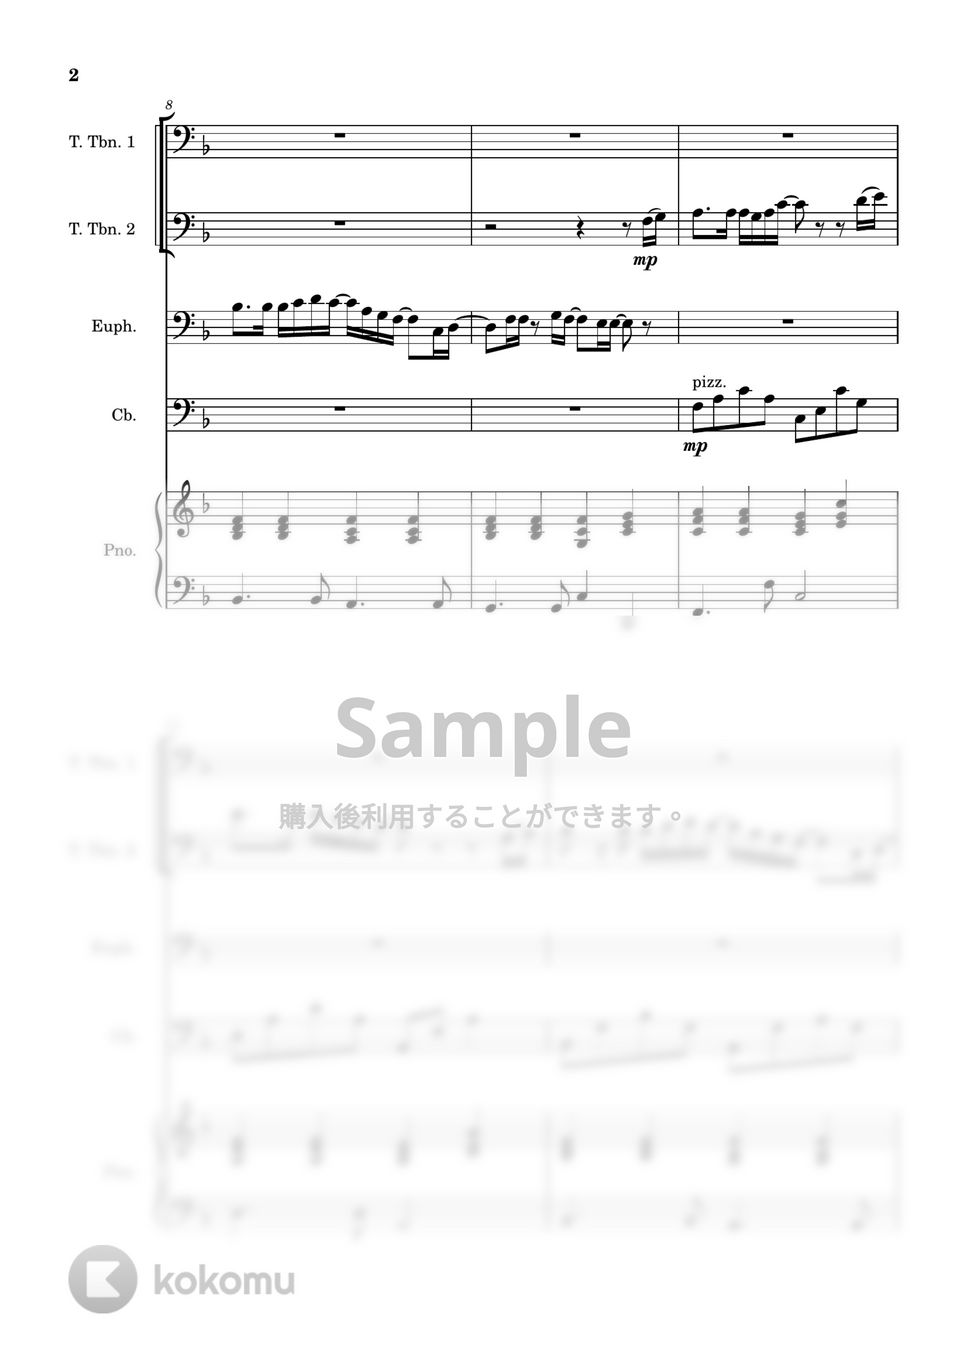 石崎ひゅーい - 虹 (ピアノ/2トロンボーン/ユーフォニアム/コントラバス) by 川上龍